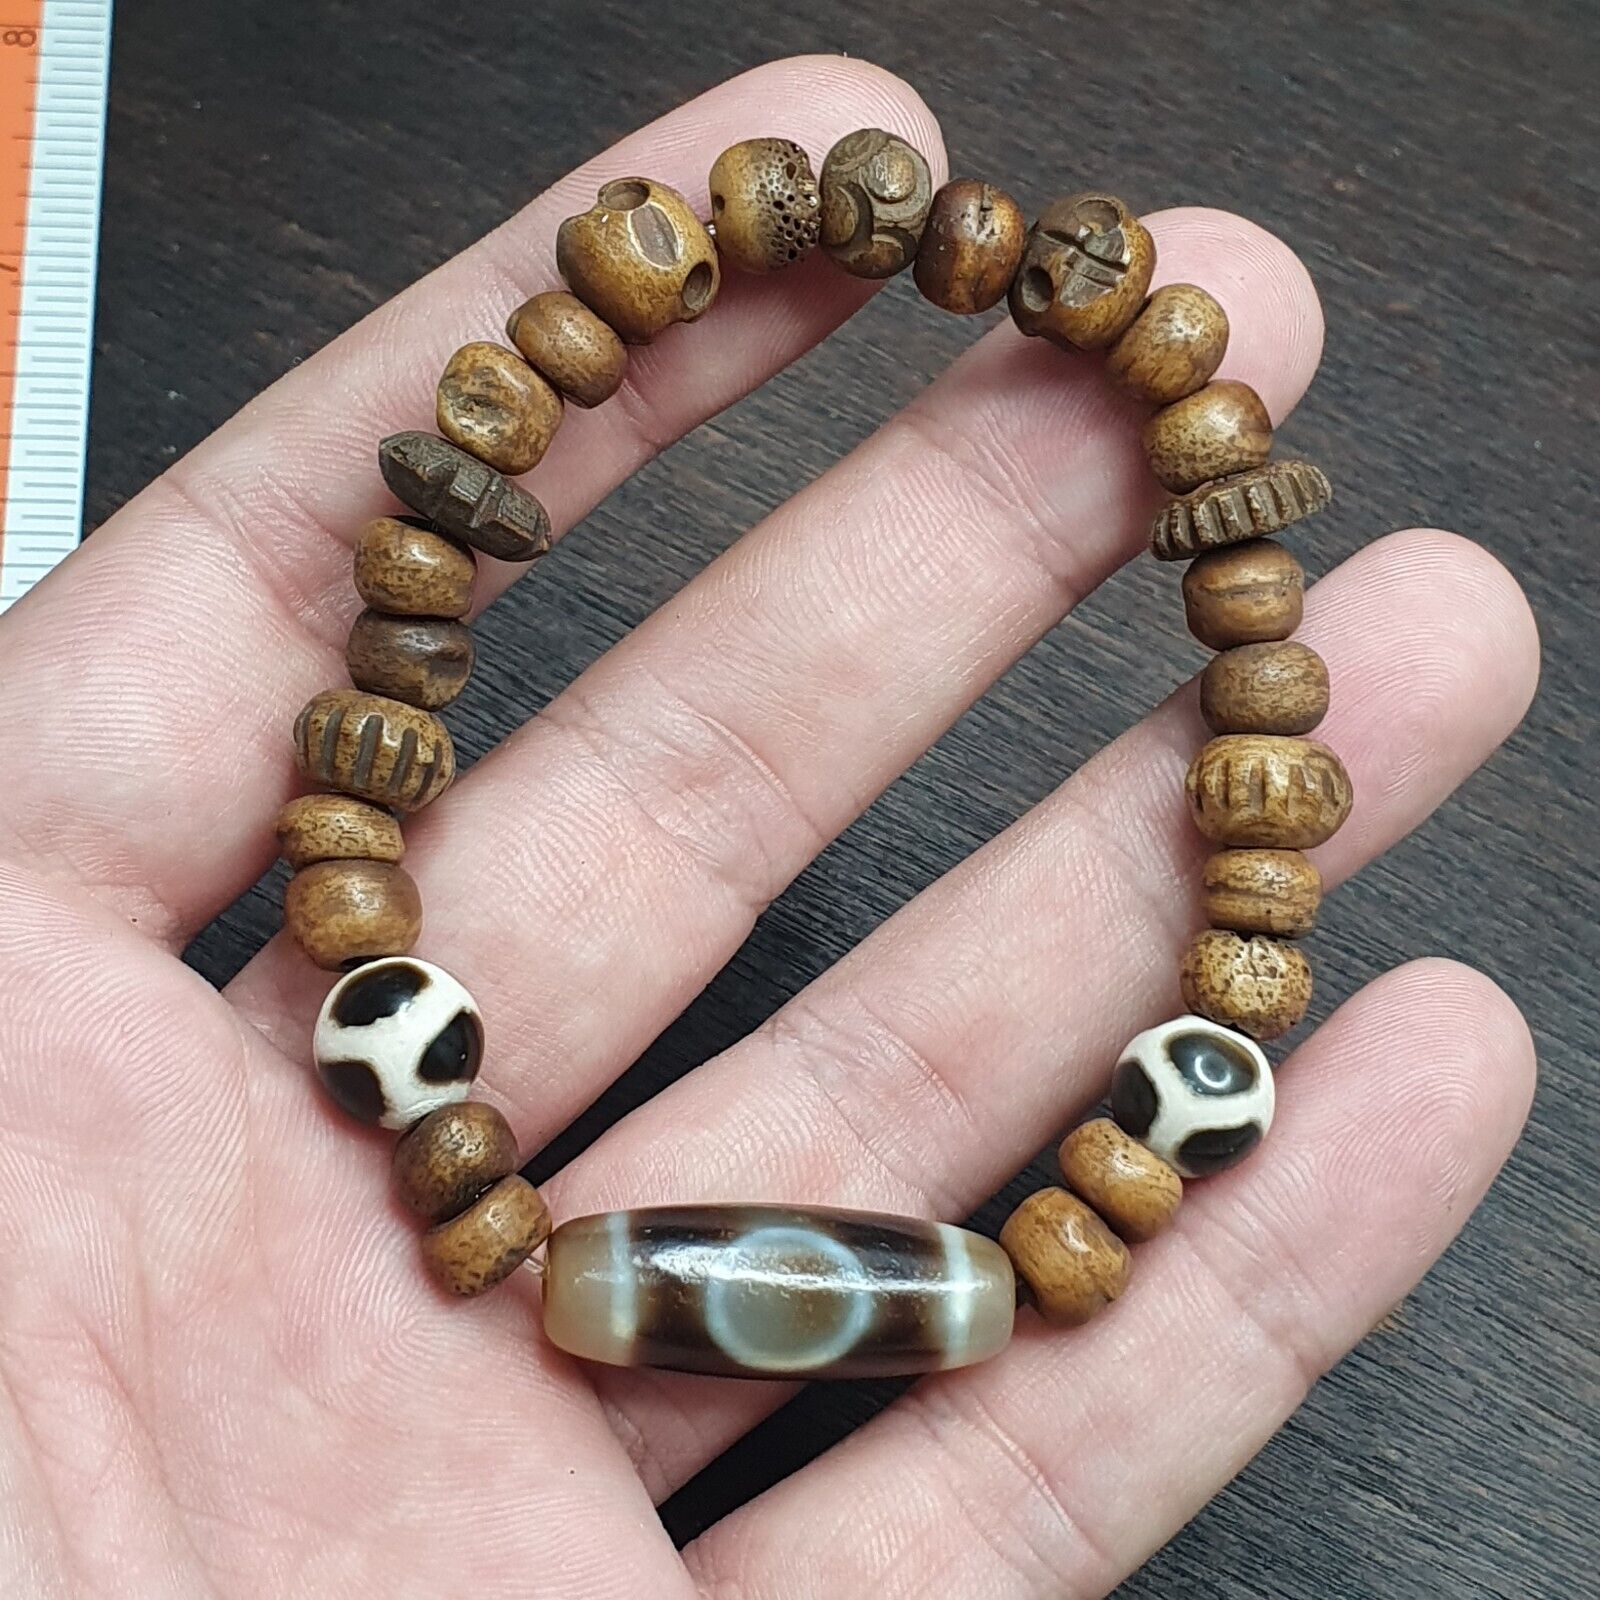 Tibetan 1Circle Eyes 1Aquare Eye Agate Dzi Bead Amulet with carving Bracelet